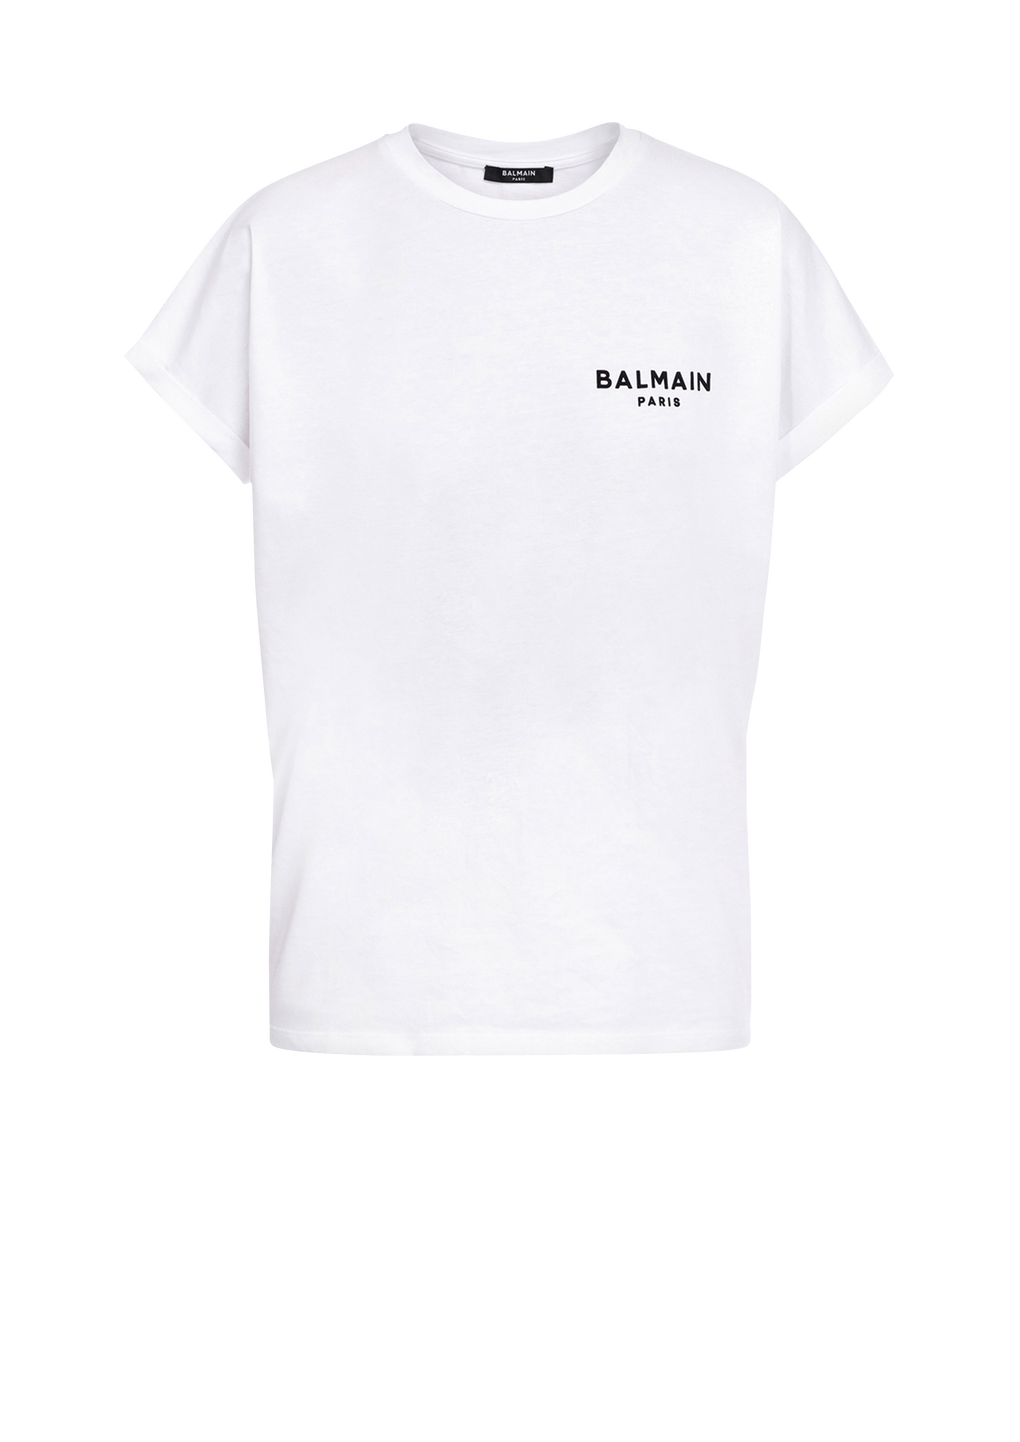 T-shirt en coton éco-design floqué petit logo Balmain, blanc, hi-res